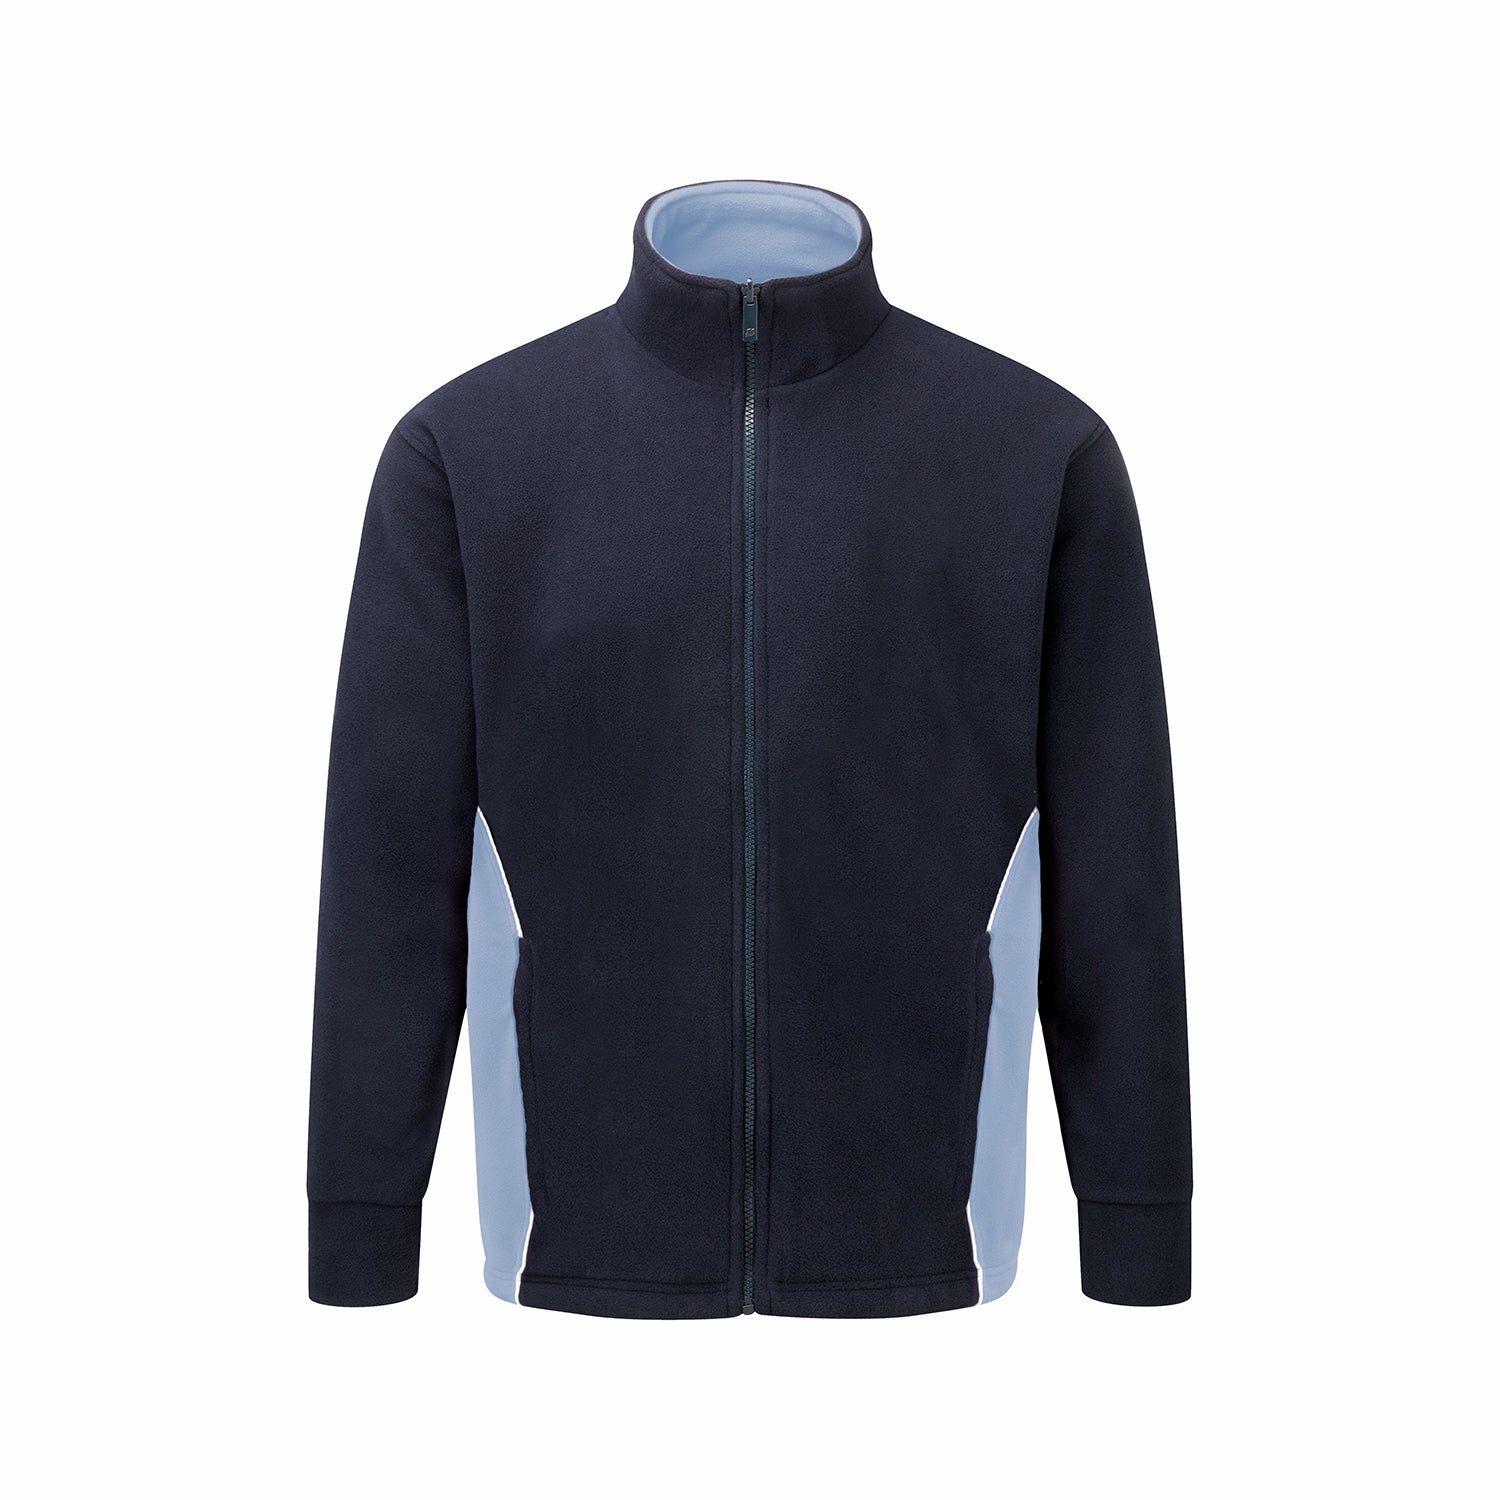 ORN Silverswift Two-Tone Workwear Fleece - Navy/Sky Blue